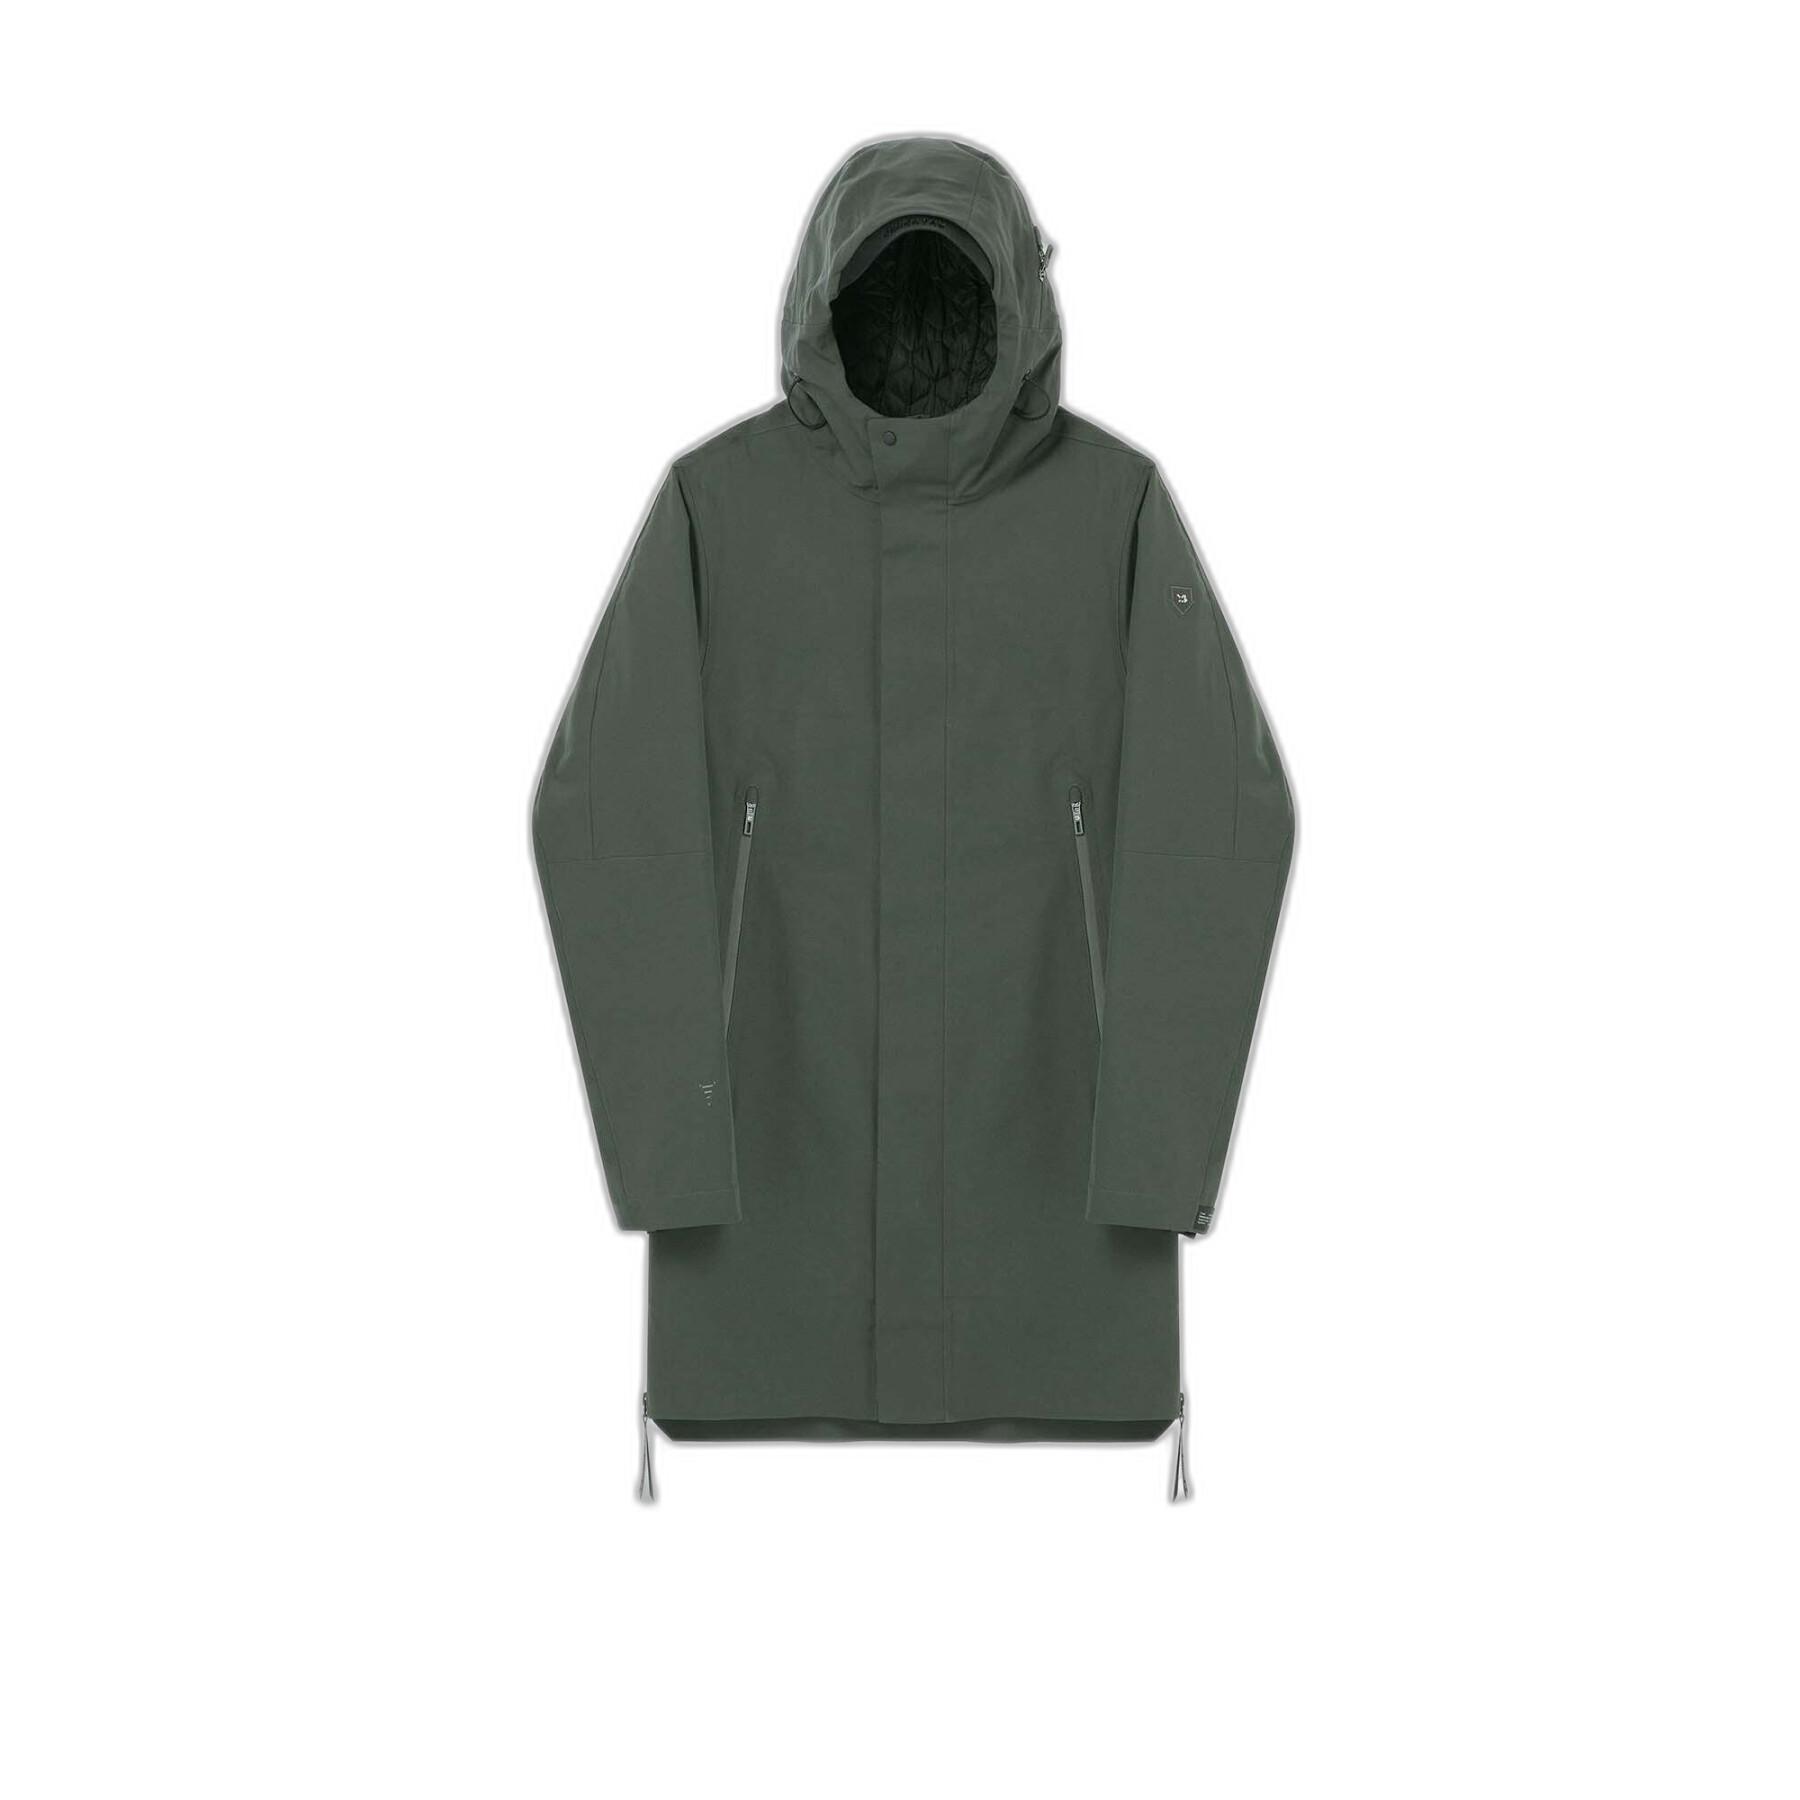 Waterproof jacket Krakatau Qm434